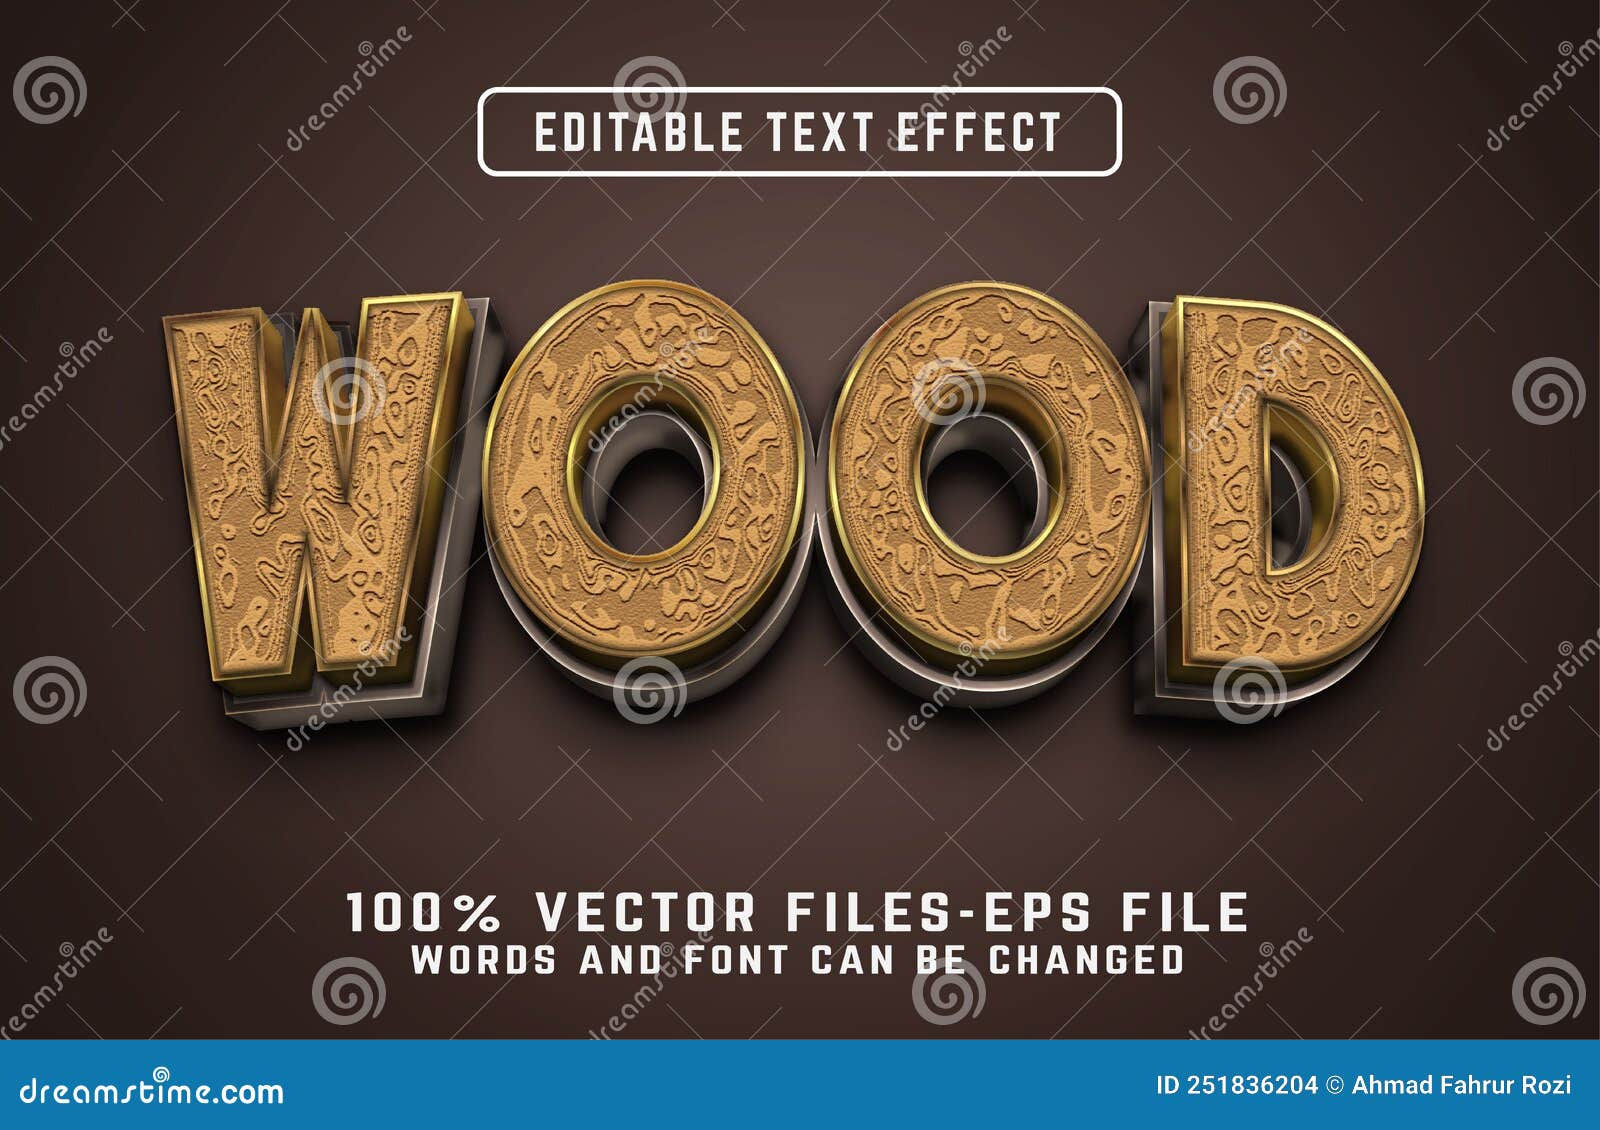 wood 3d text effect premium s